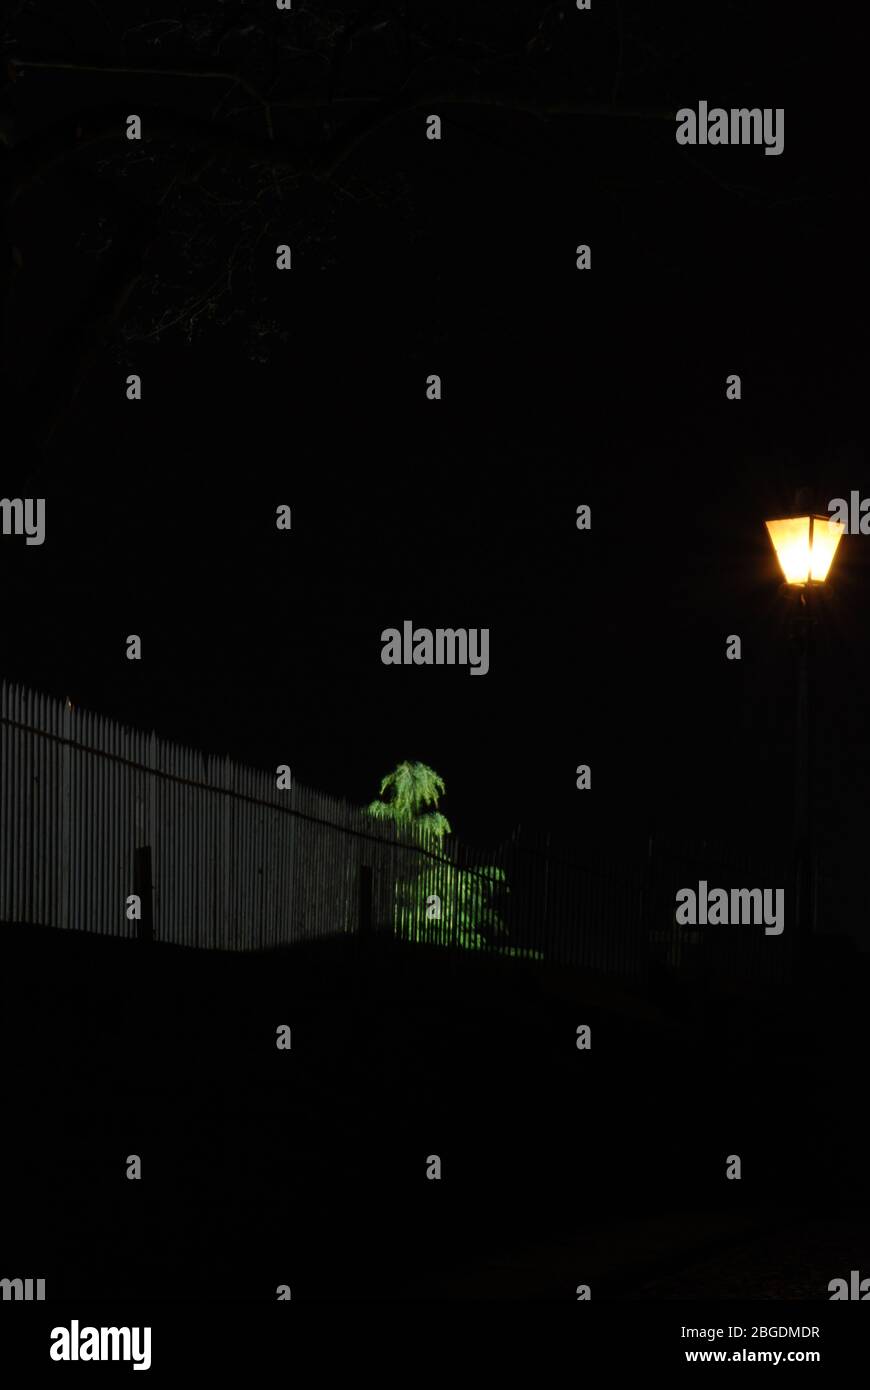 Immagine notturna con luce soffusa da una sola luce stradale che mette in risalto un albero vicino e recinzione contro l'oscurità Foto Stock